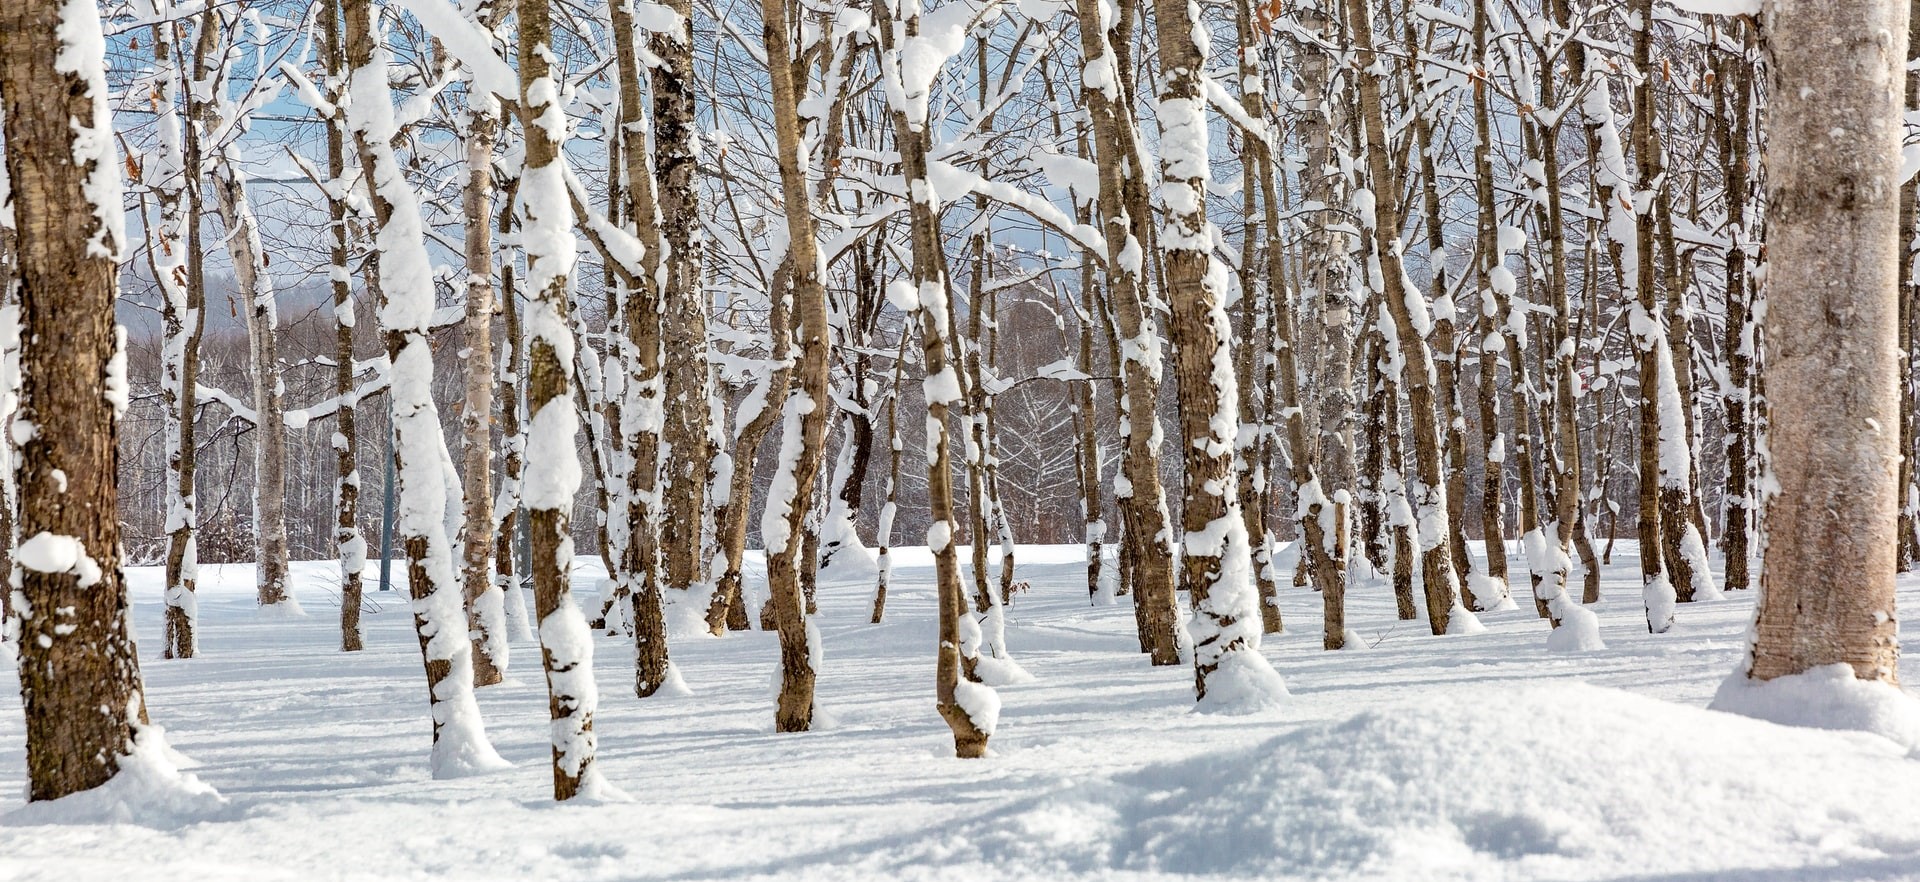 Na Slovensku v posledných zimách zneží pomerne často, problém je ale v tom, že sneh sa najmä v nižších polohách udrží len krátko. Autor: Marek Okon, Unsplash